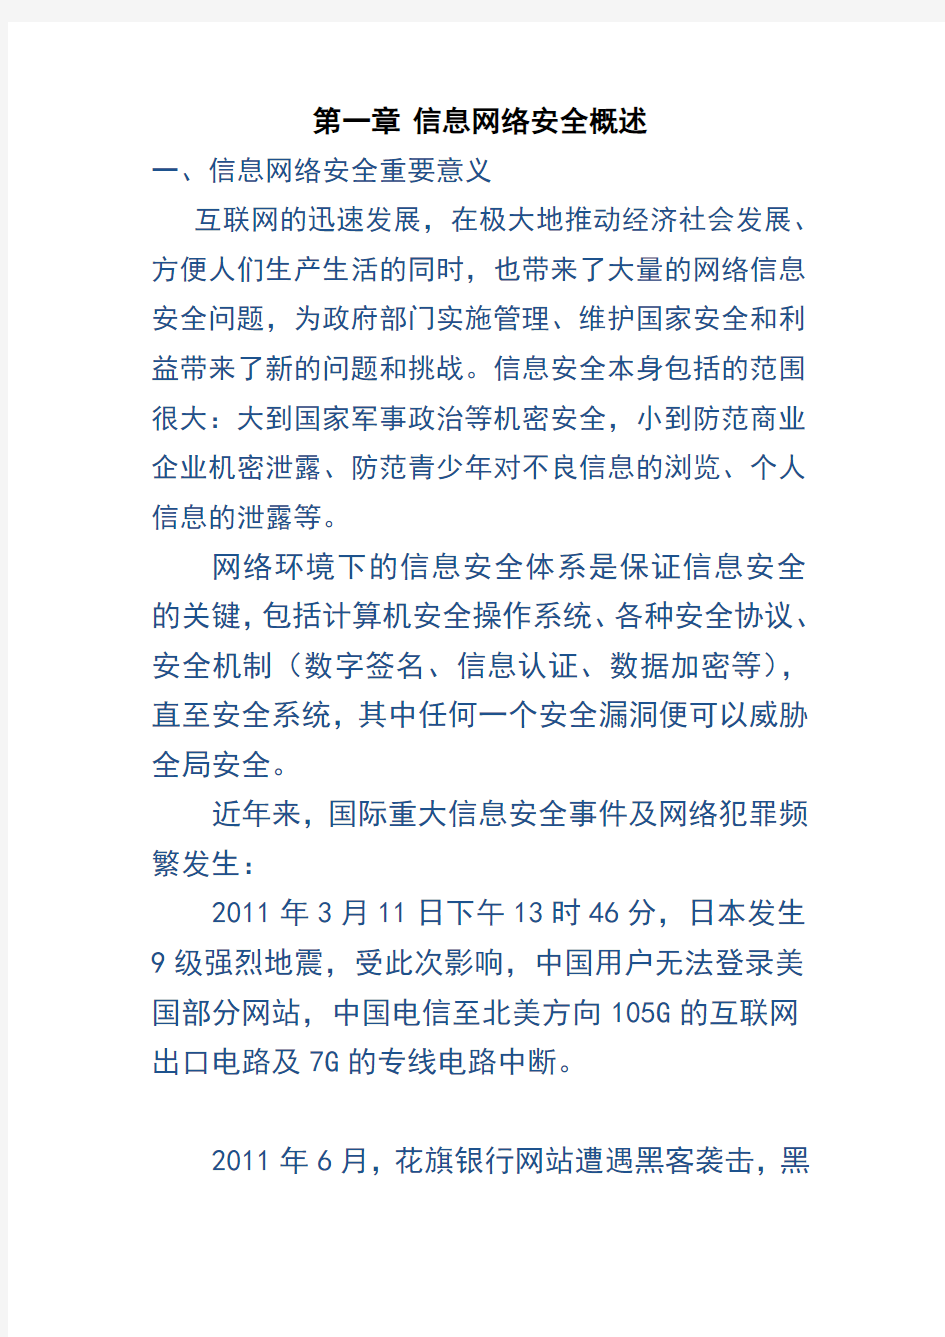 01 郑州市 2015 网络安全员培训考试资料 管理 第一章